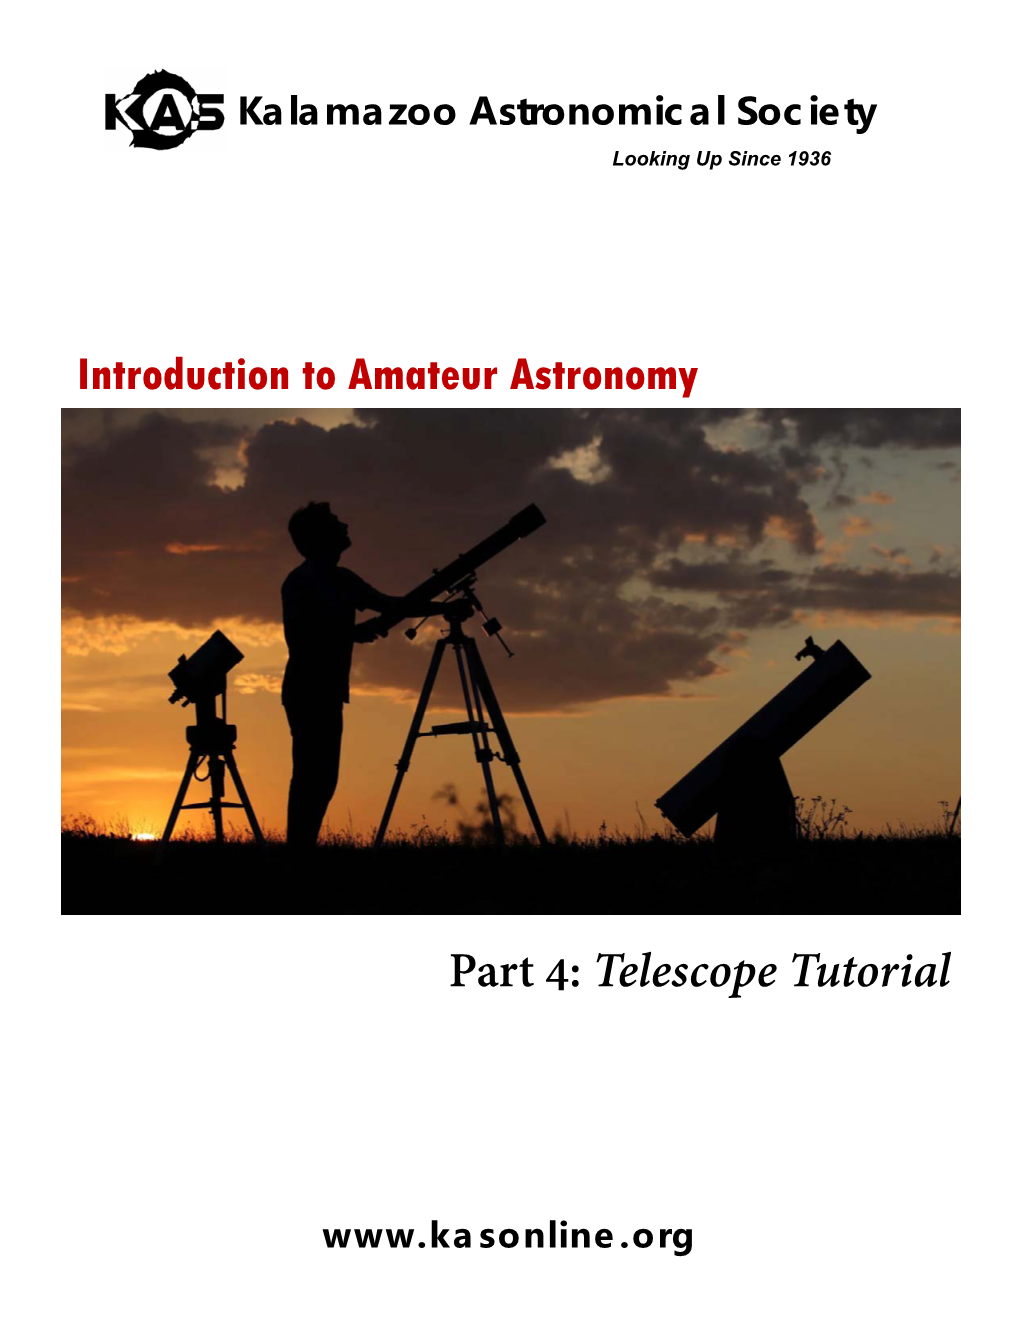 Part 4: Telescope Tutorial